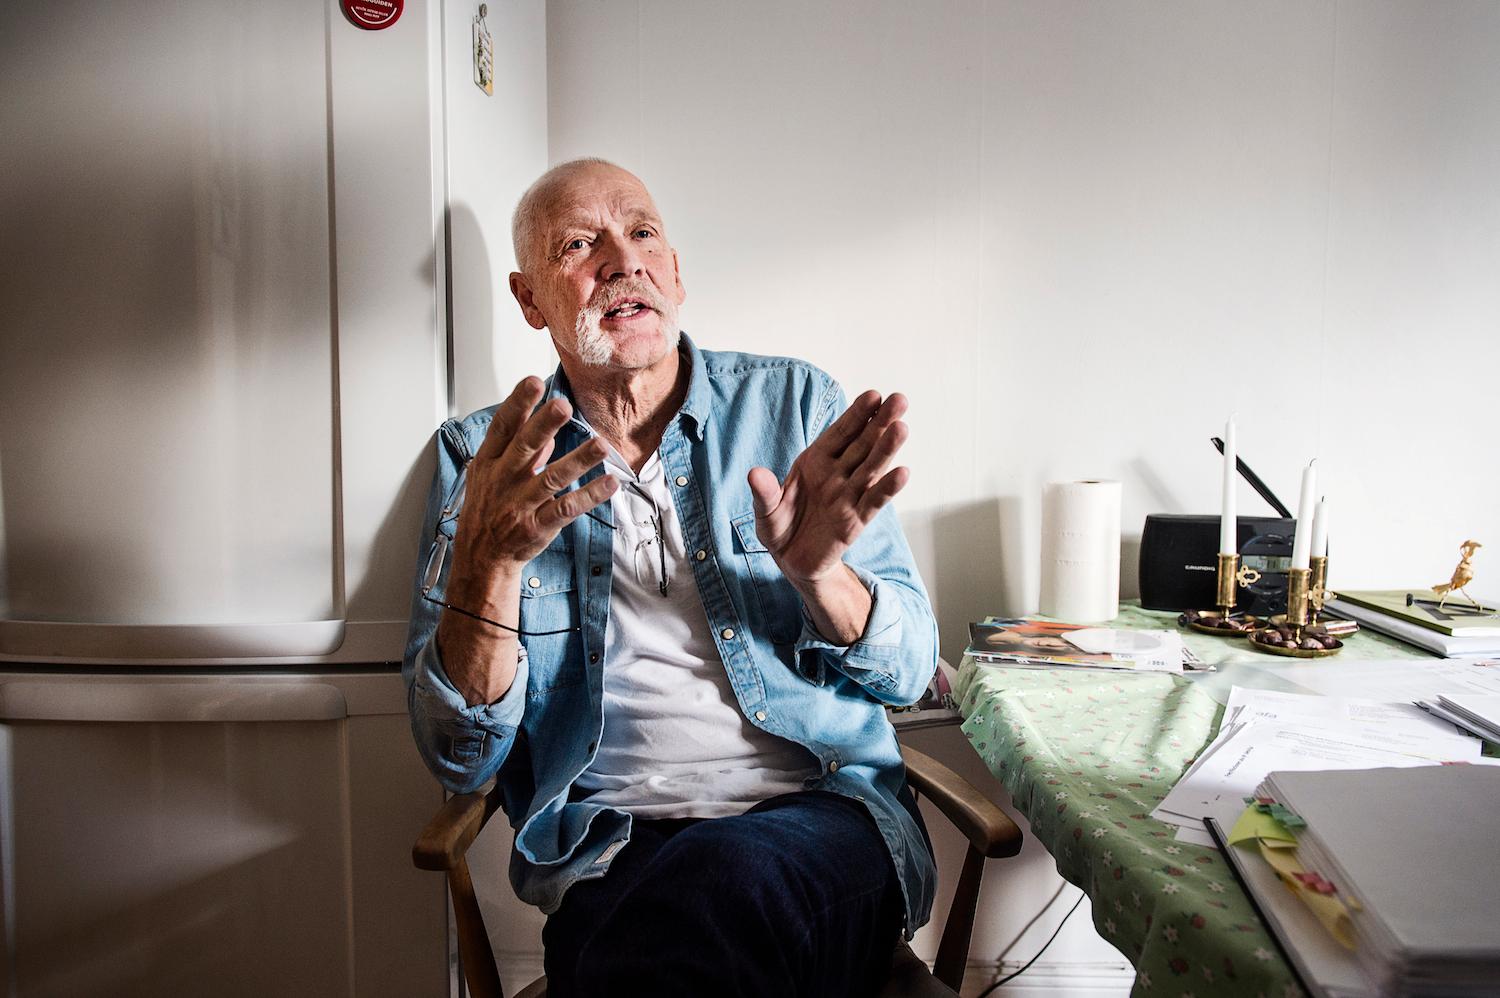 Arbetsskadade Leif Kåvestad, 72, kämpade mot AFA för att få livränta och har hjälpt fyra andra män. Läs mer i Aftonbladets granskning "Blåsta på försäkringen